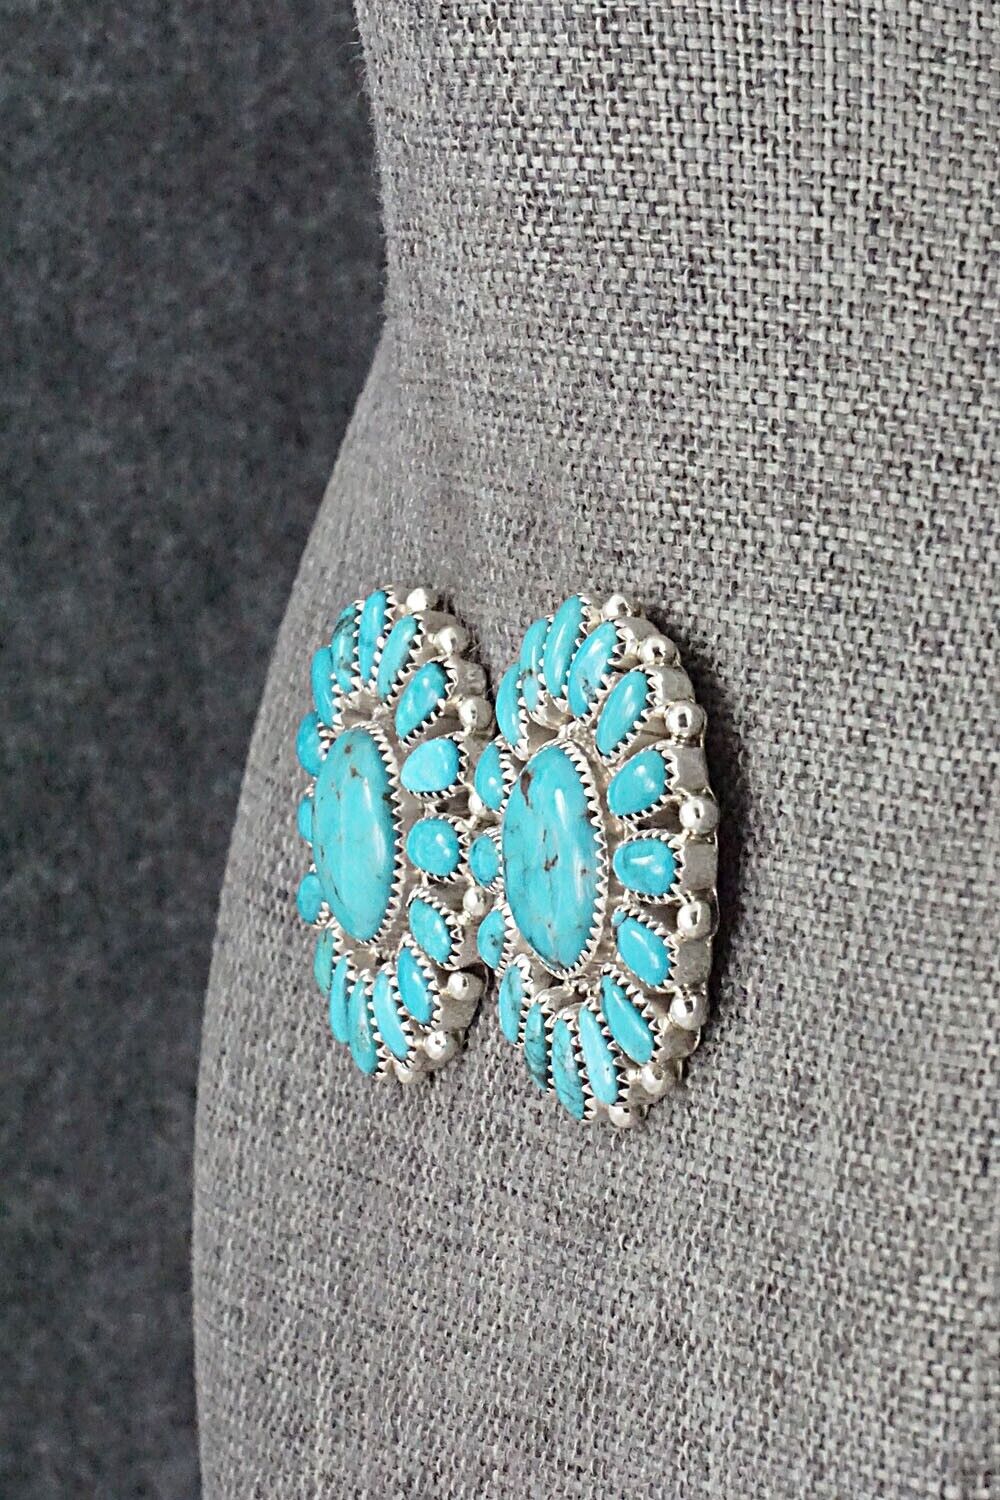 Turquoise & Sterling Silver Earrings - Jaz Wilson